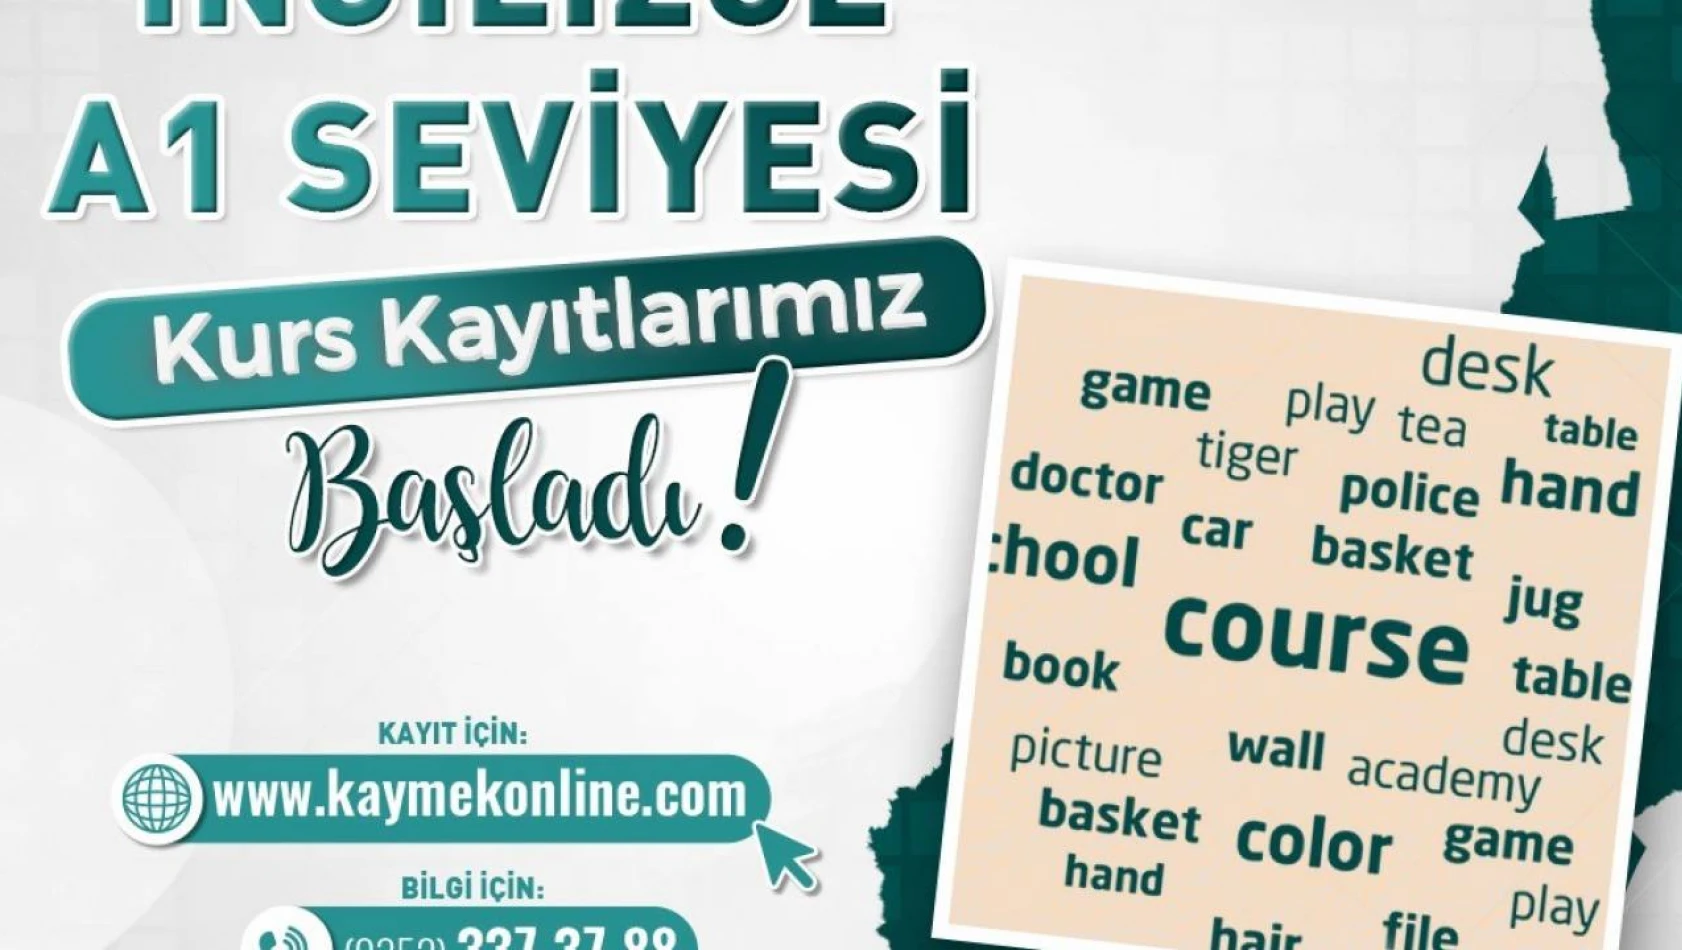 Kayseri'de Yeni Dil Kursları: İngilizce ve Arapça Kayıtları Açıldı